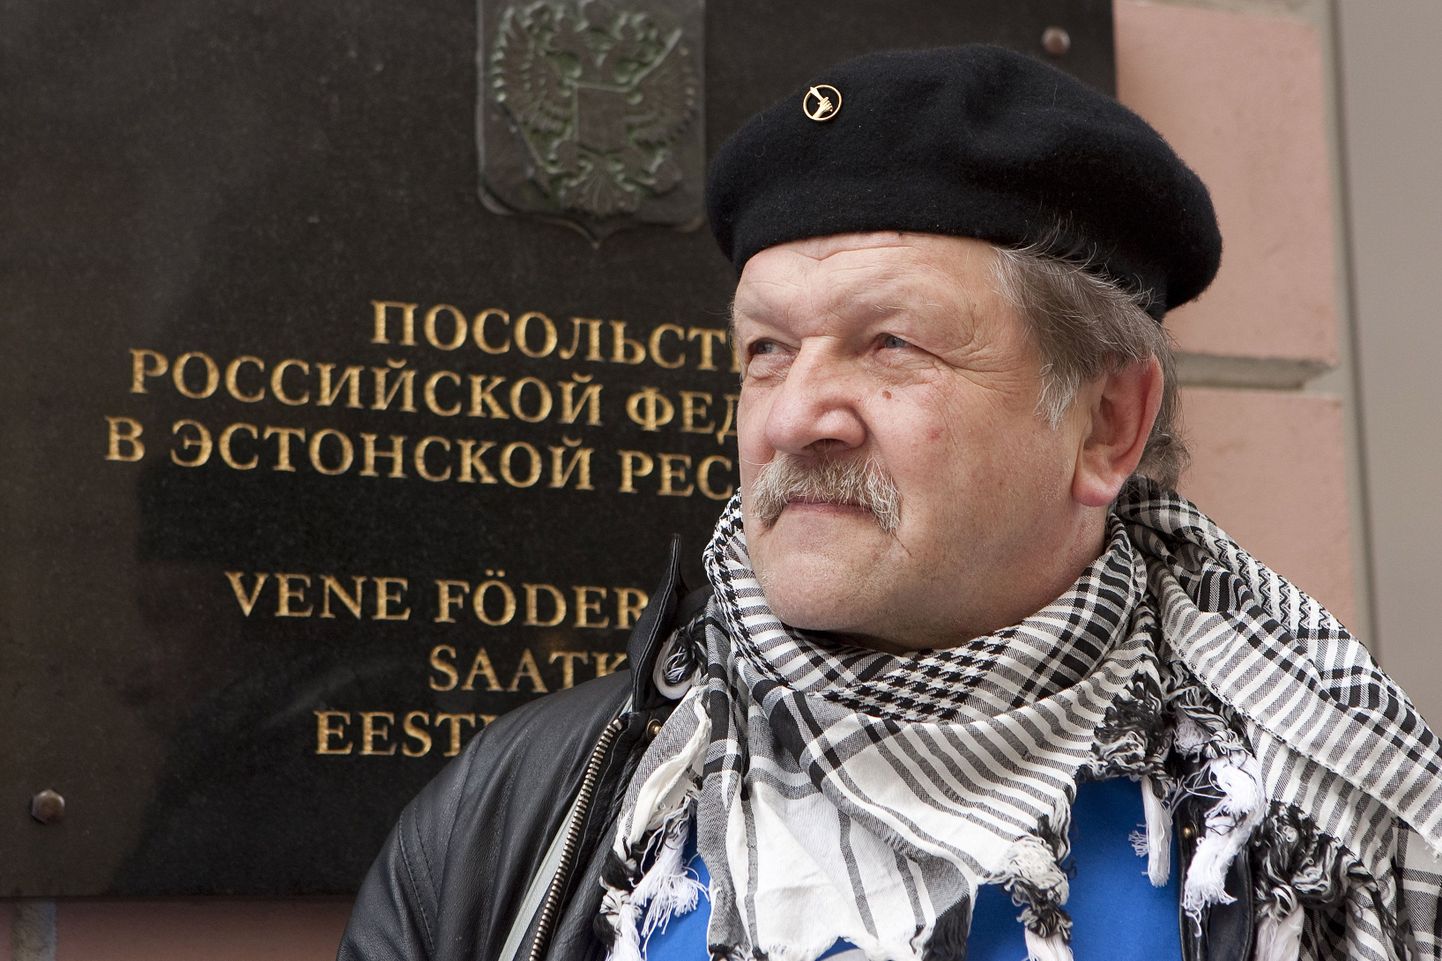 Тийт Мадиссон во время одной из своих акций у дверей посольства РФ в Таллинне.